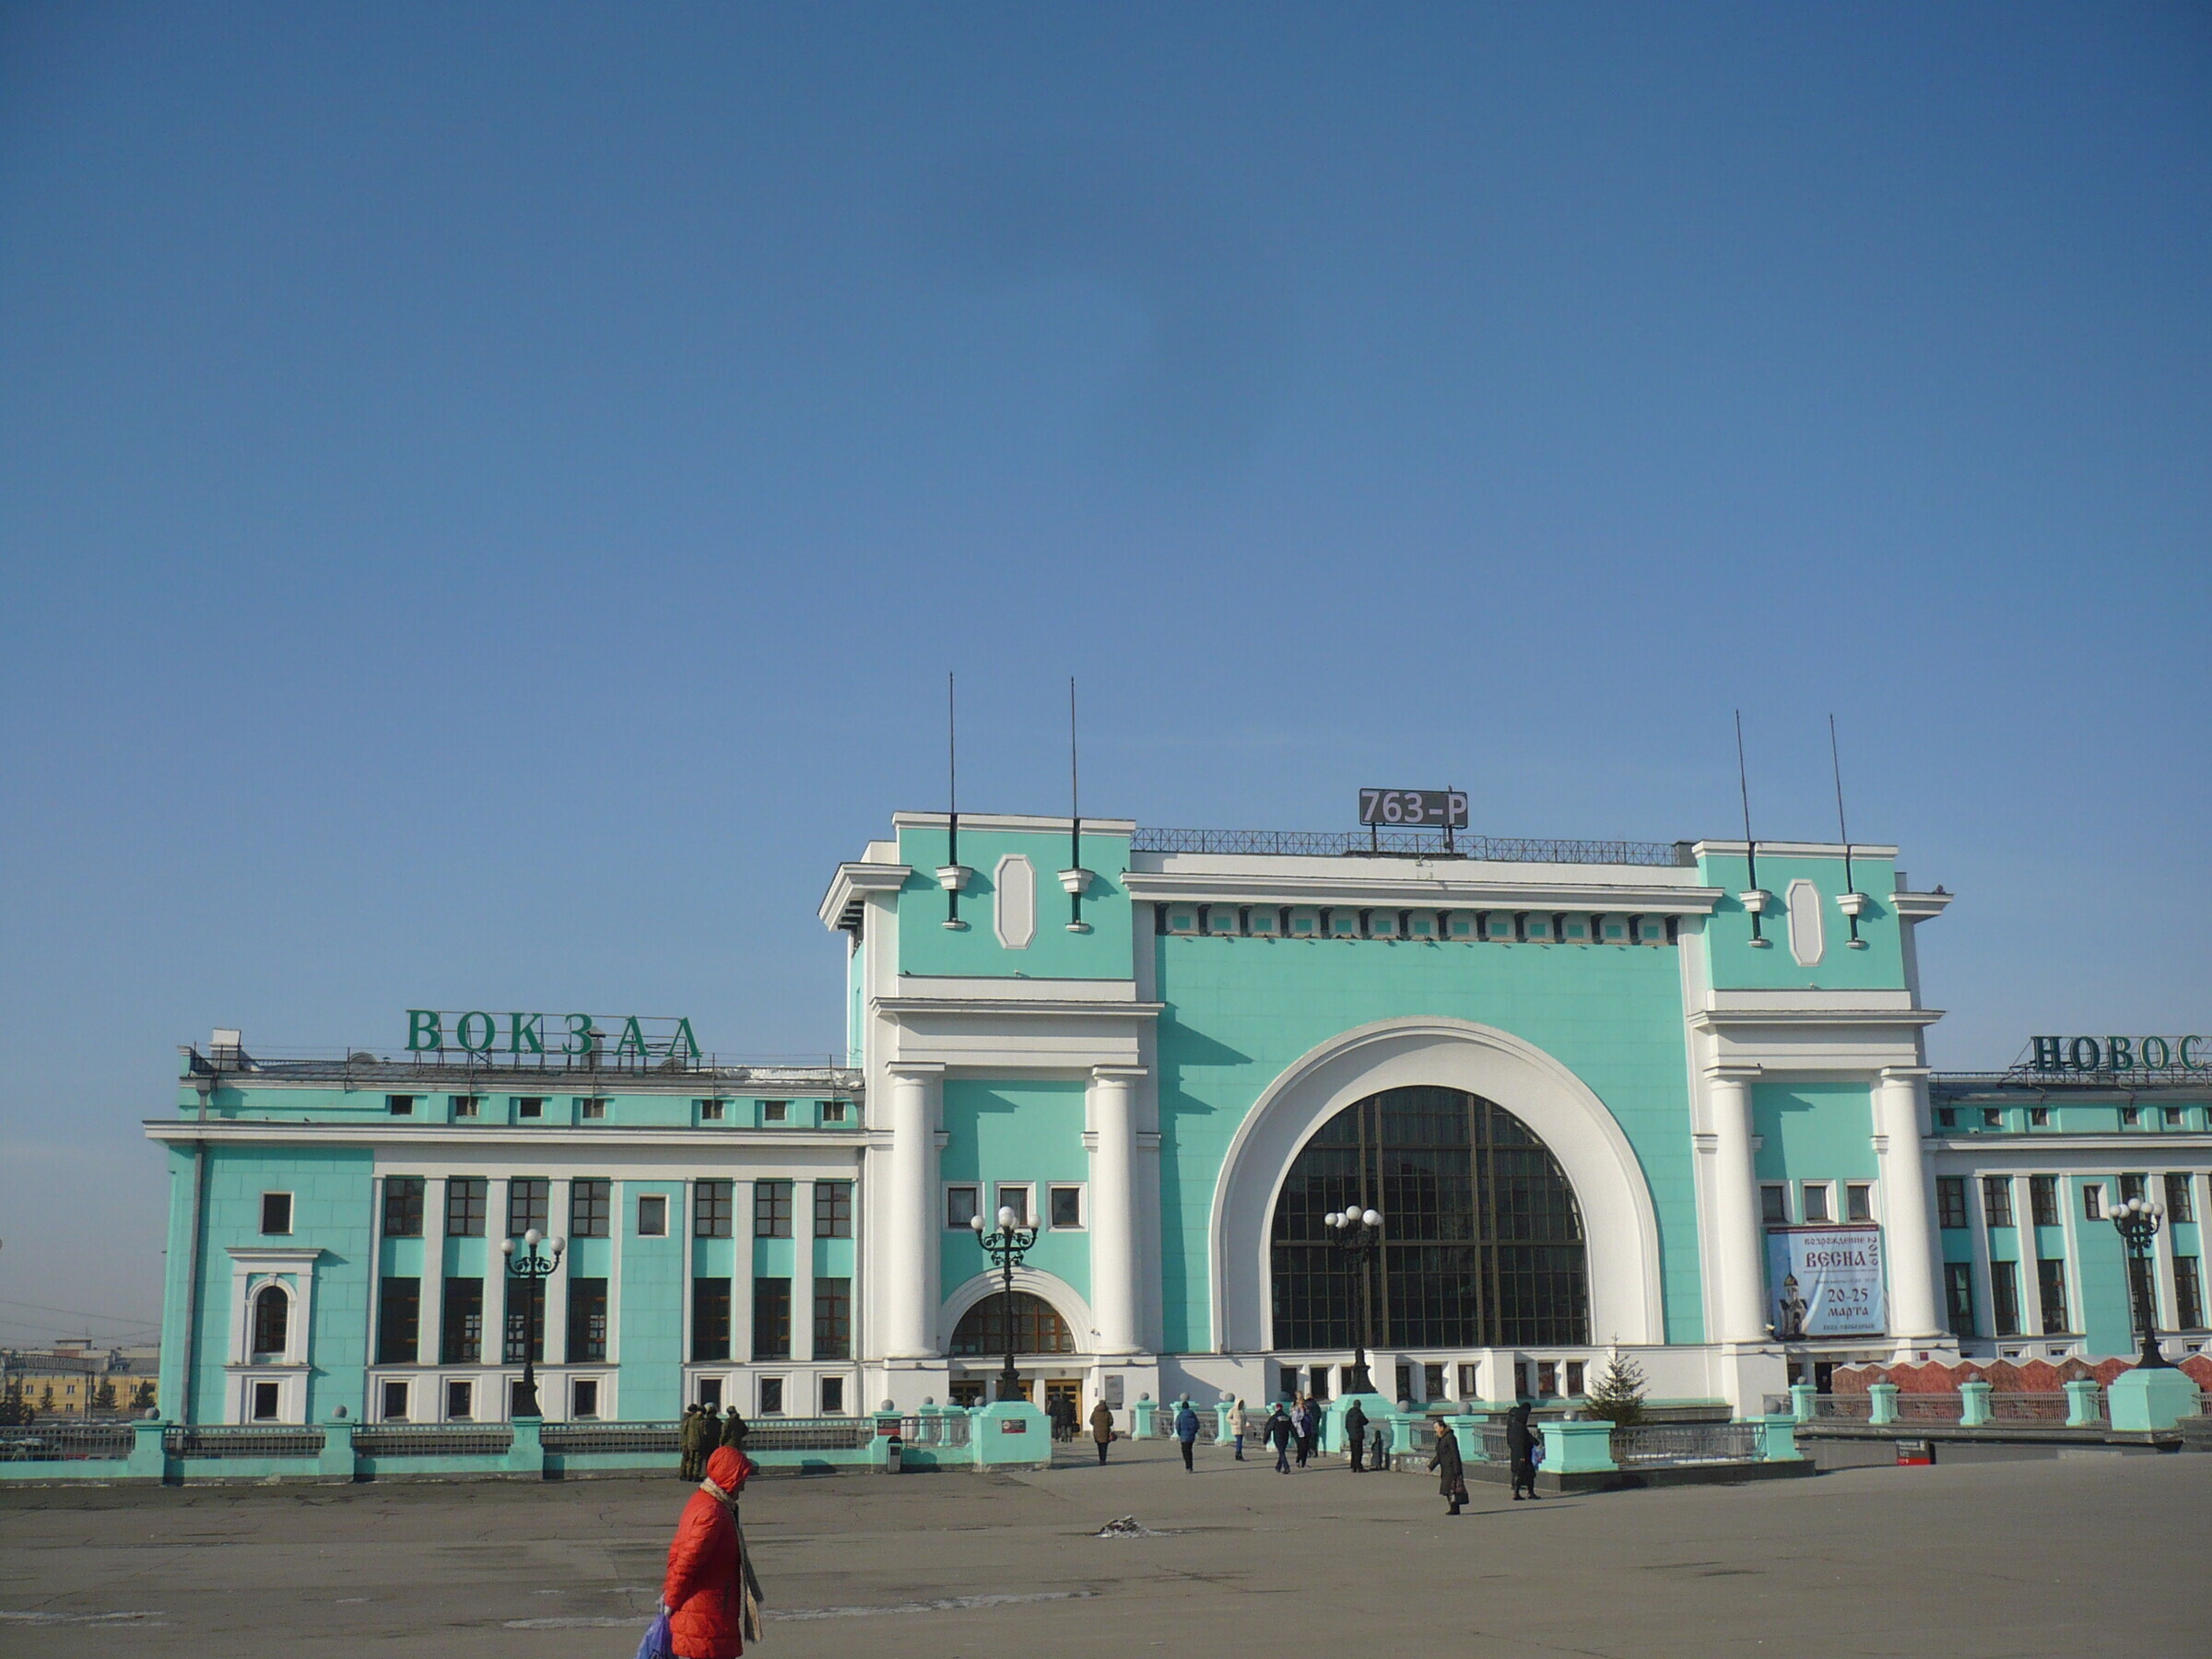 ЖД вокзал Новосибирск главный, фонтан